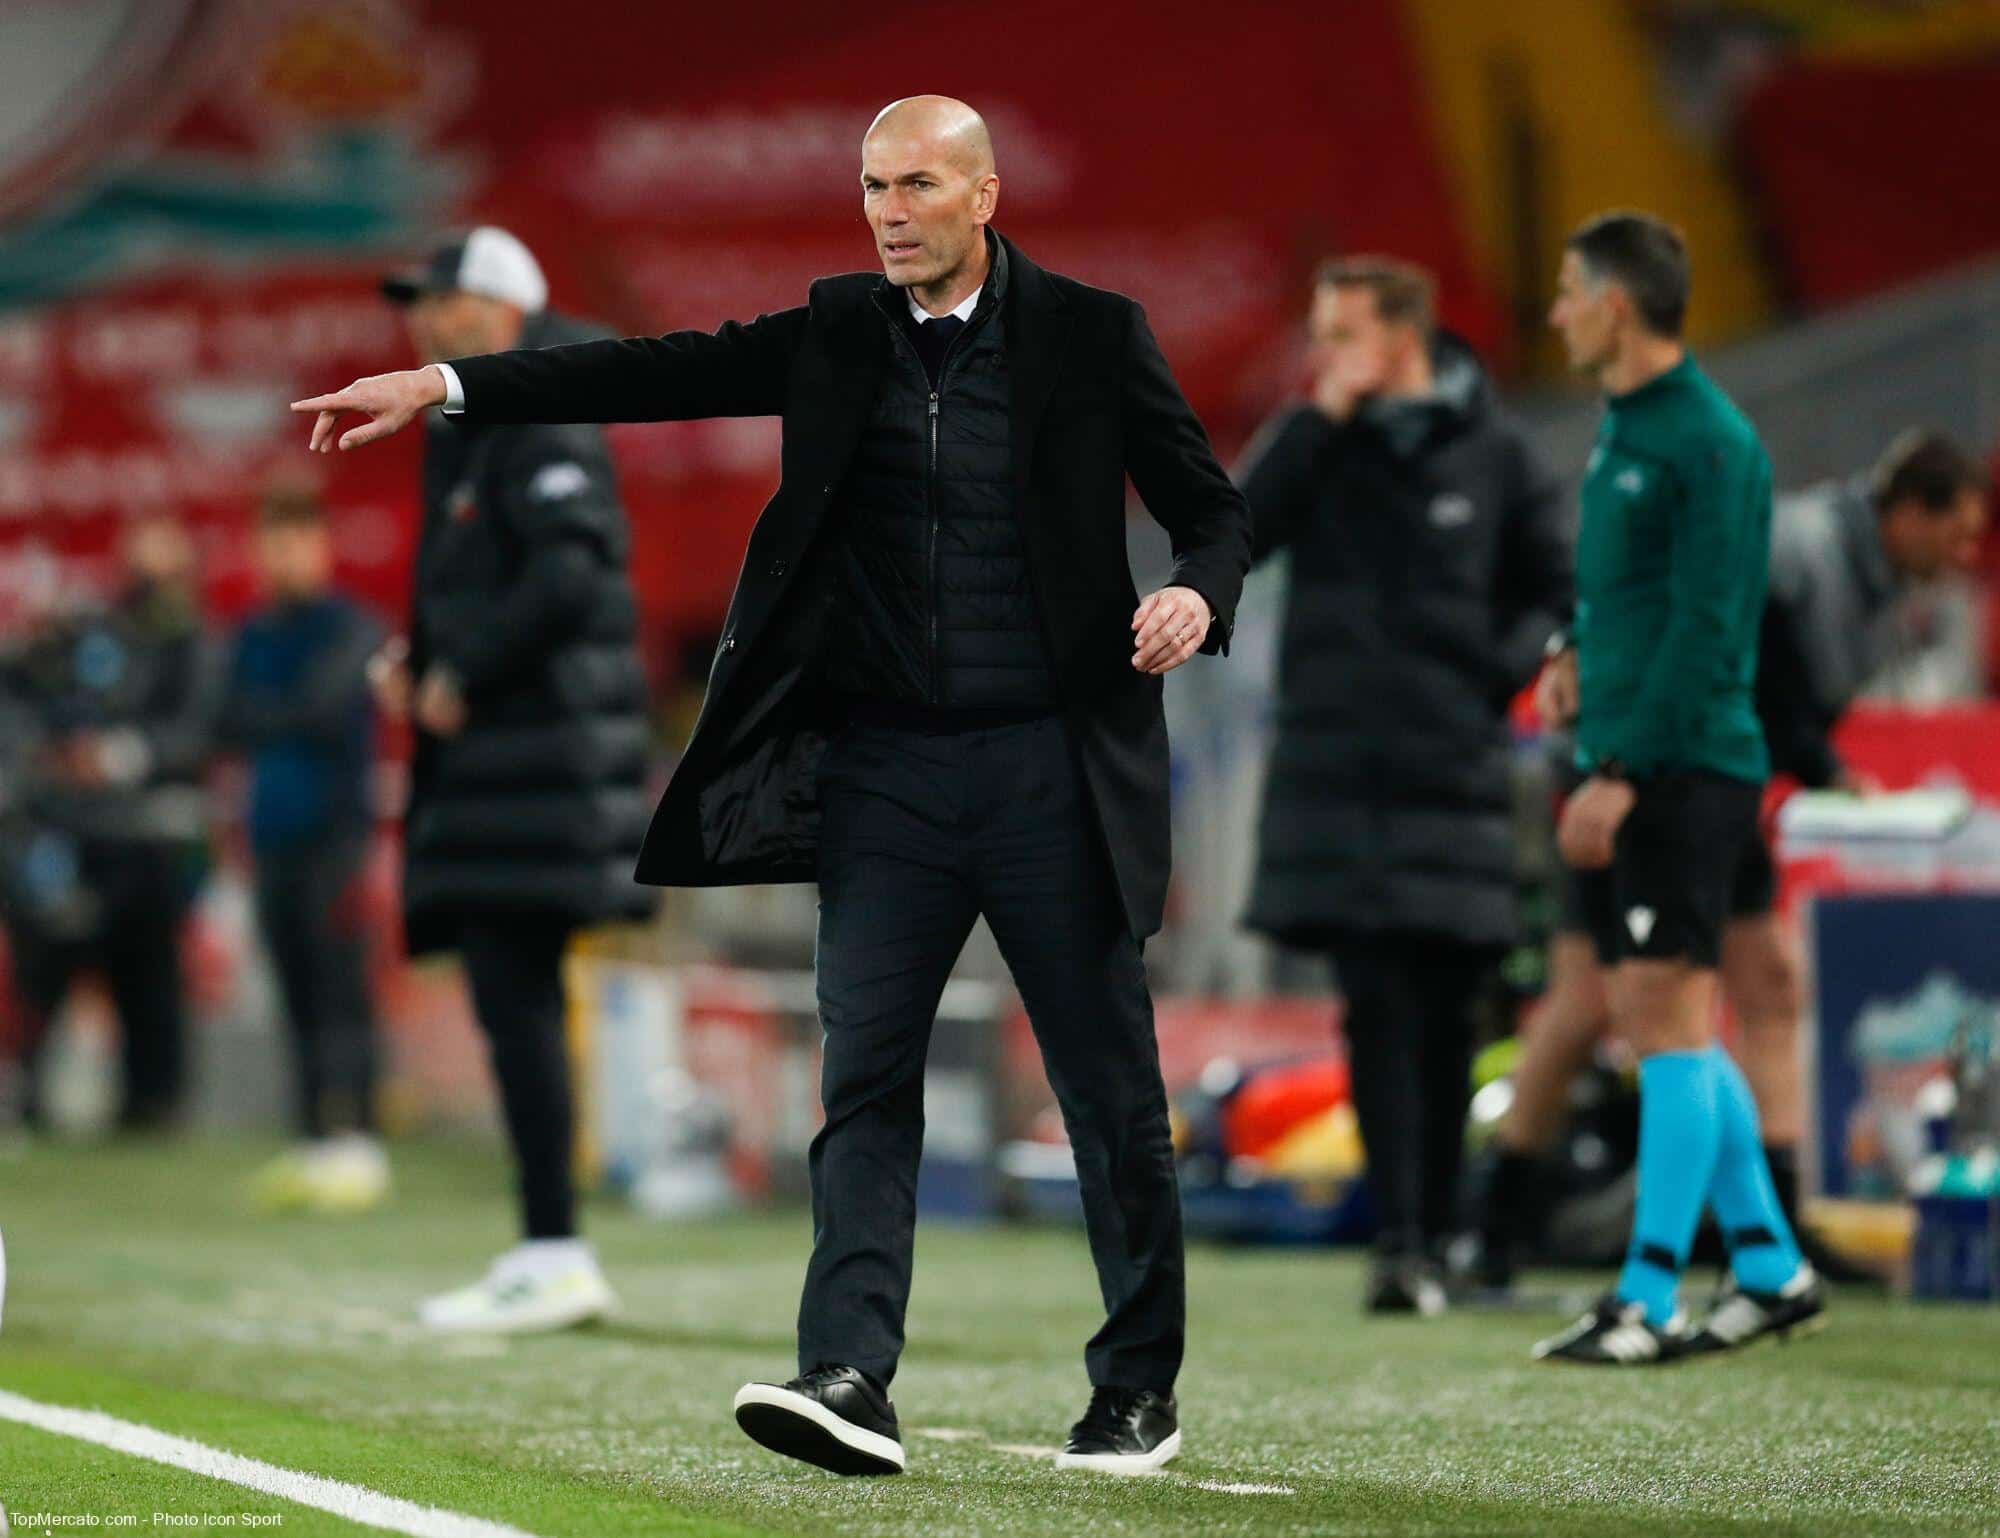 Equipe de France: Voici un qui rêve d’une surprise comme Zidane